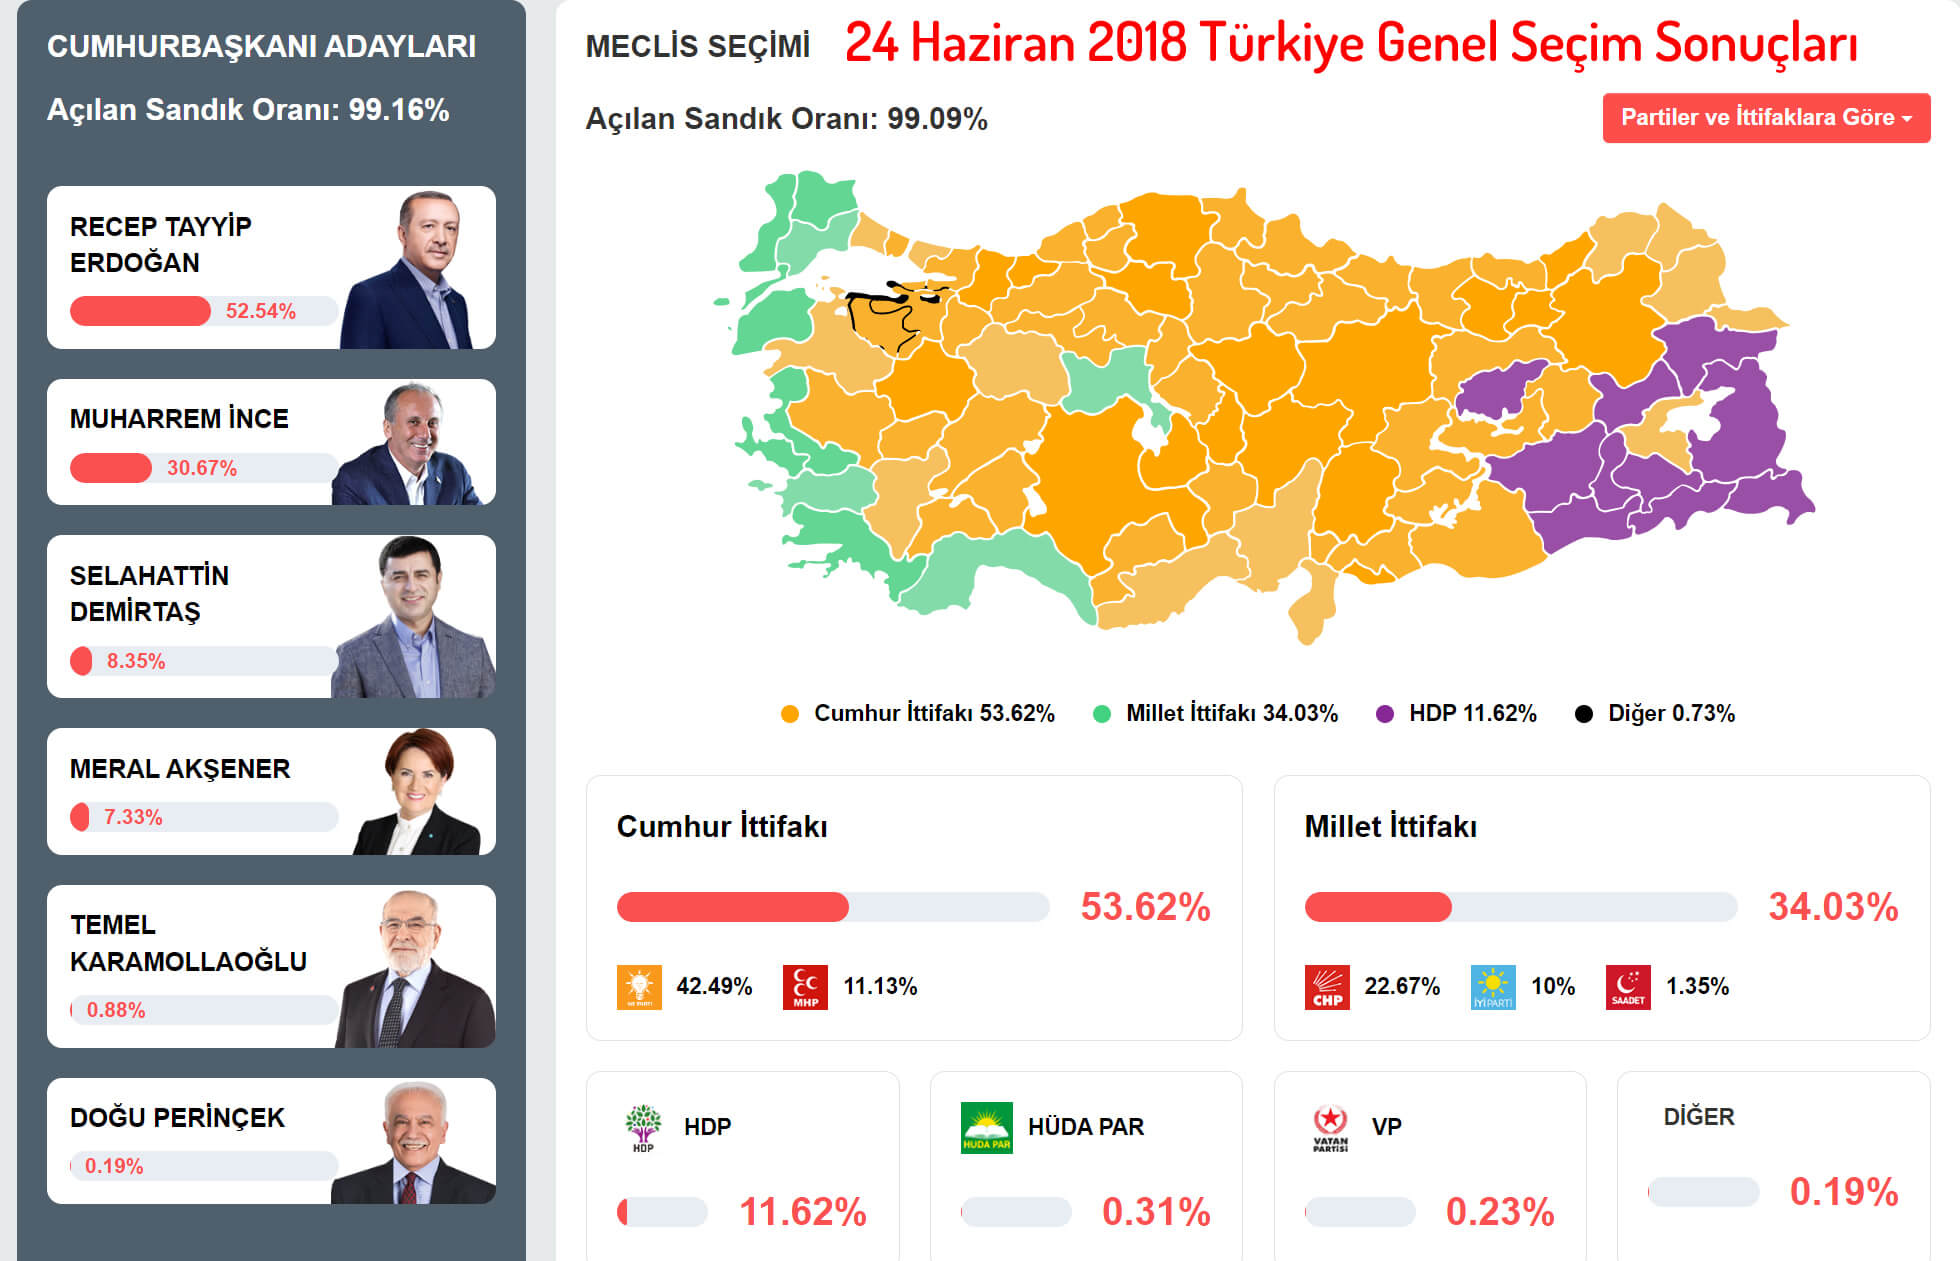 24 Haziran 2018 Türkiye Genel Seçim Sonuçları